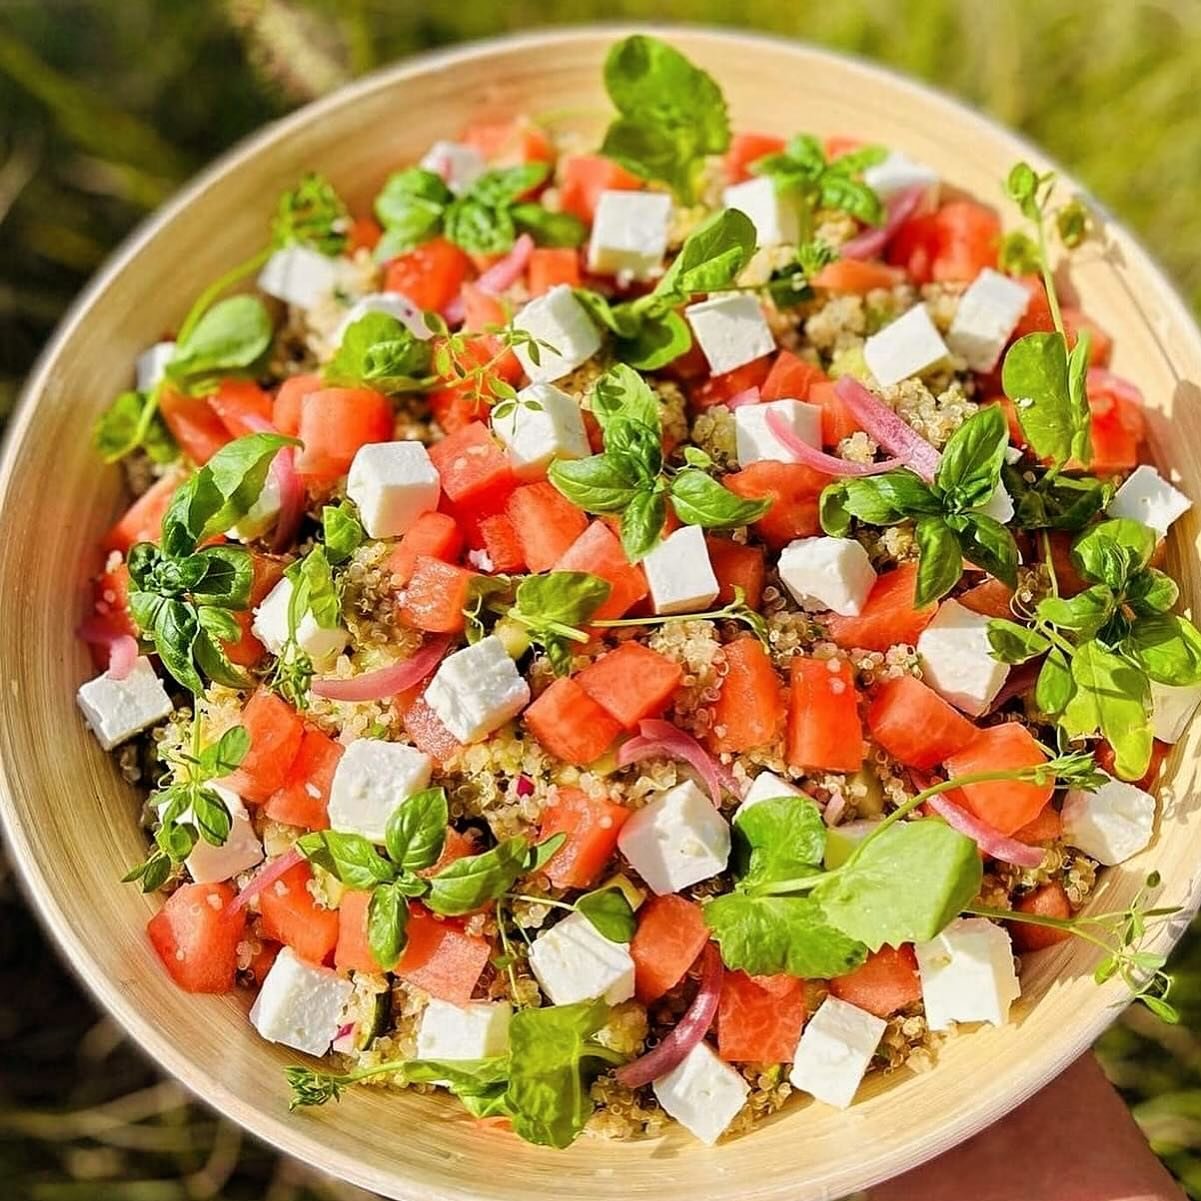 🍉 Sunny vibes in je bord! Salade quinoa, watermeloen 🍉 feta! 😋

Er zijn vrijdag nog plekjes vrij! Reserveer via www.bij-else-frederic.be/zenchef

014/707.989